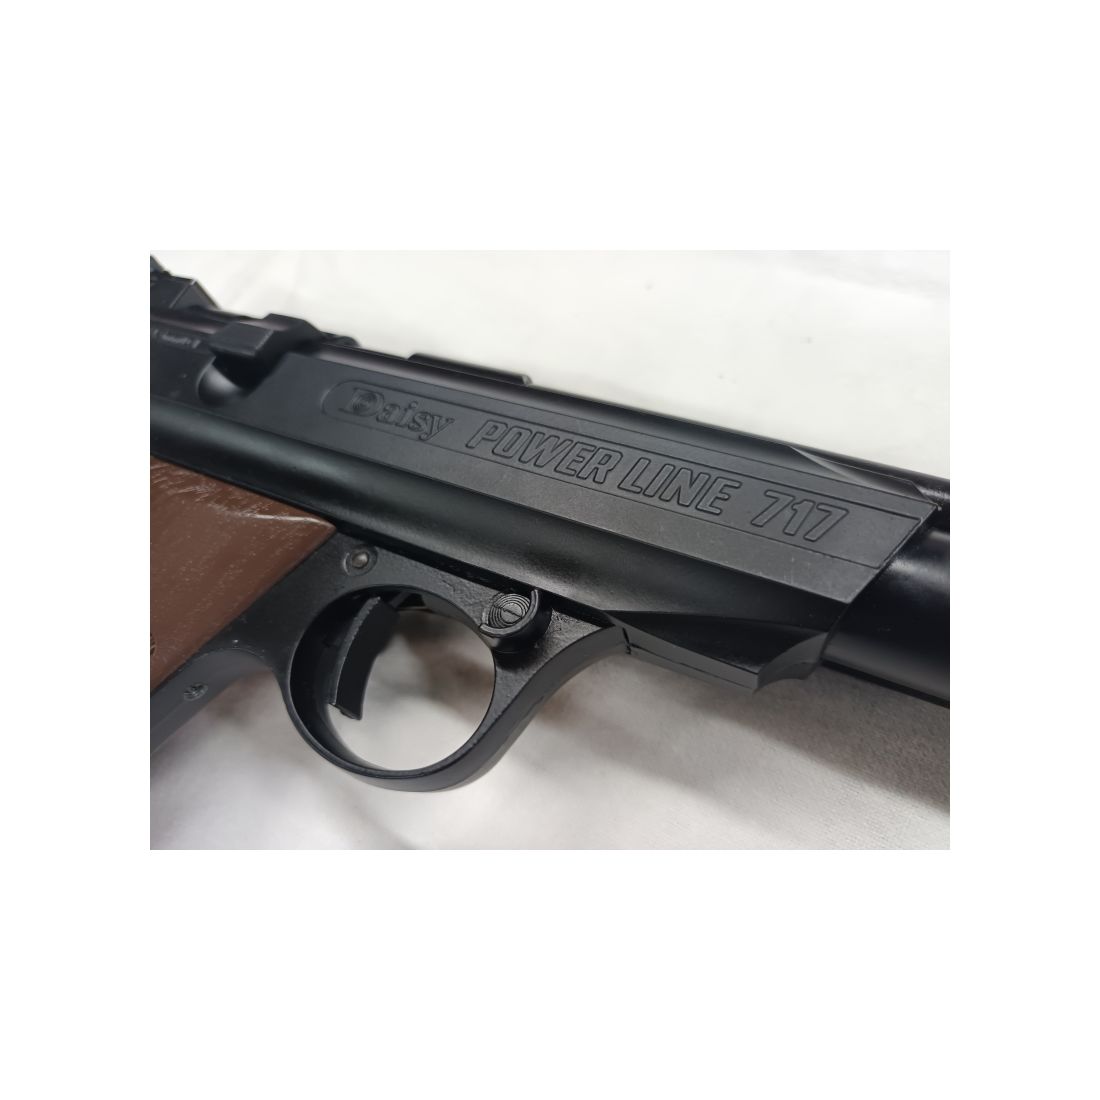 LUPI Daisy 717 Matchpistole LP Luftpistole Pistole 4,5mm/177 Seitenspanner - FRISCH ÜBERHOLTE WAFFE